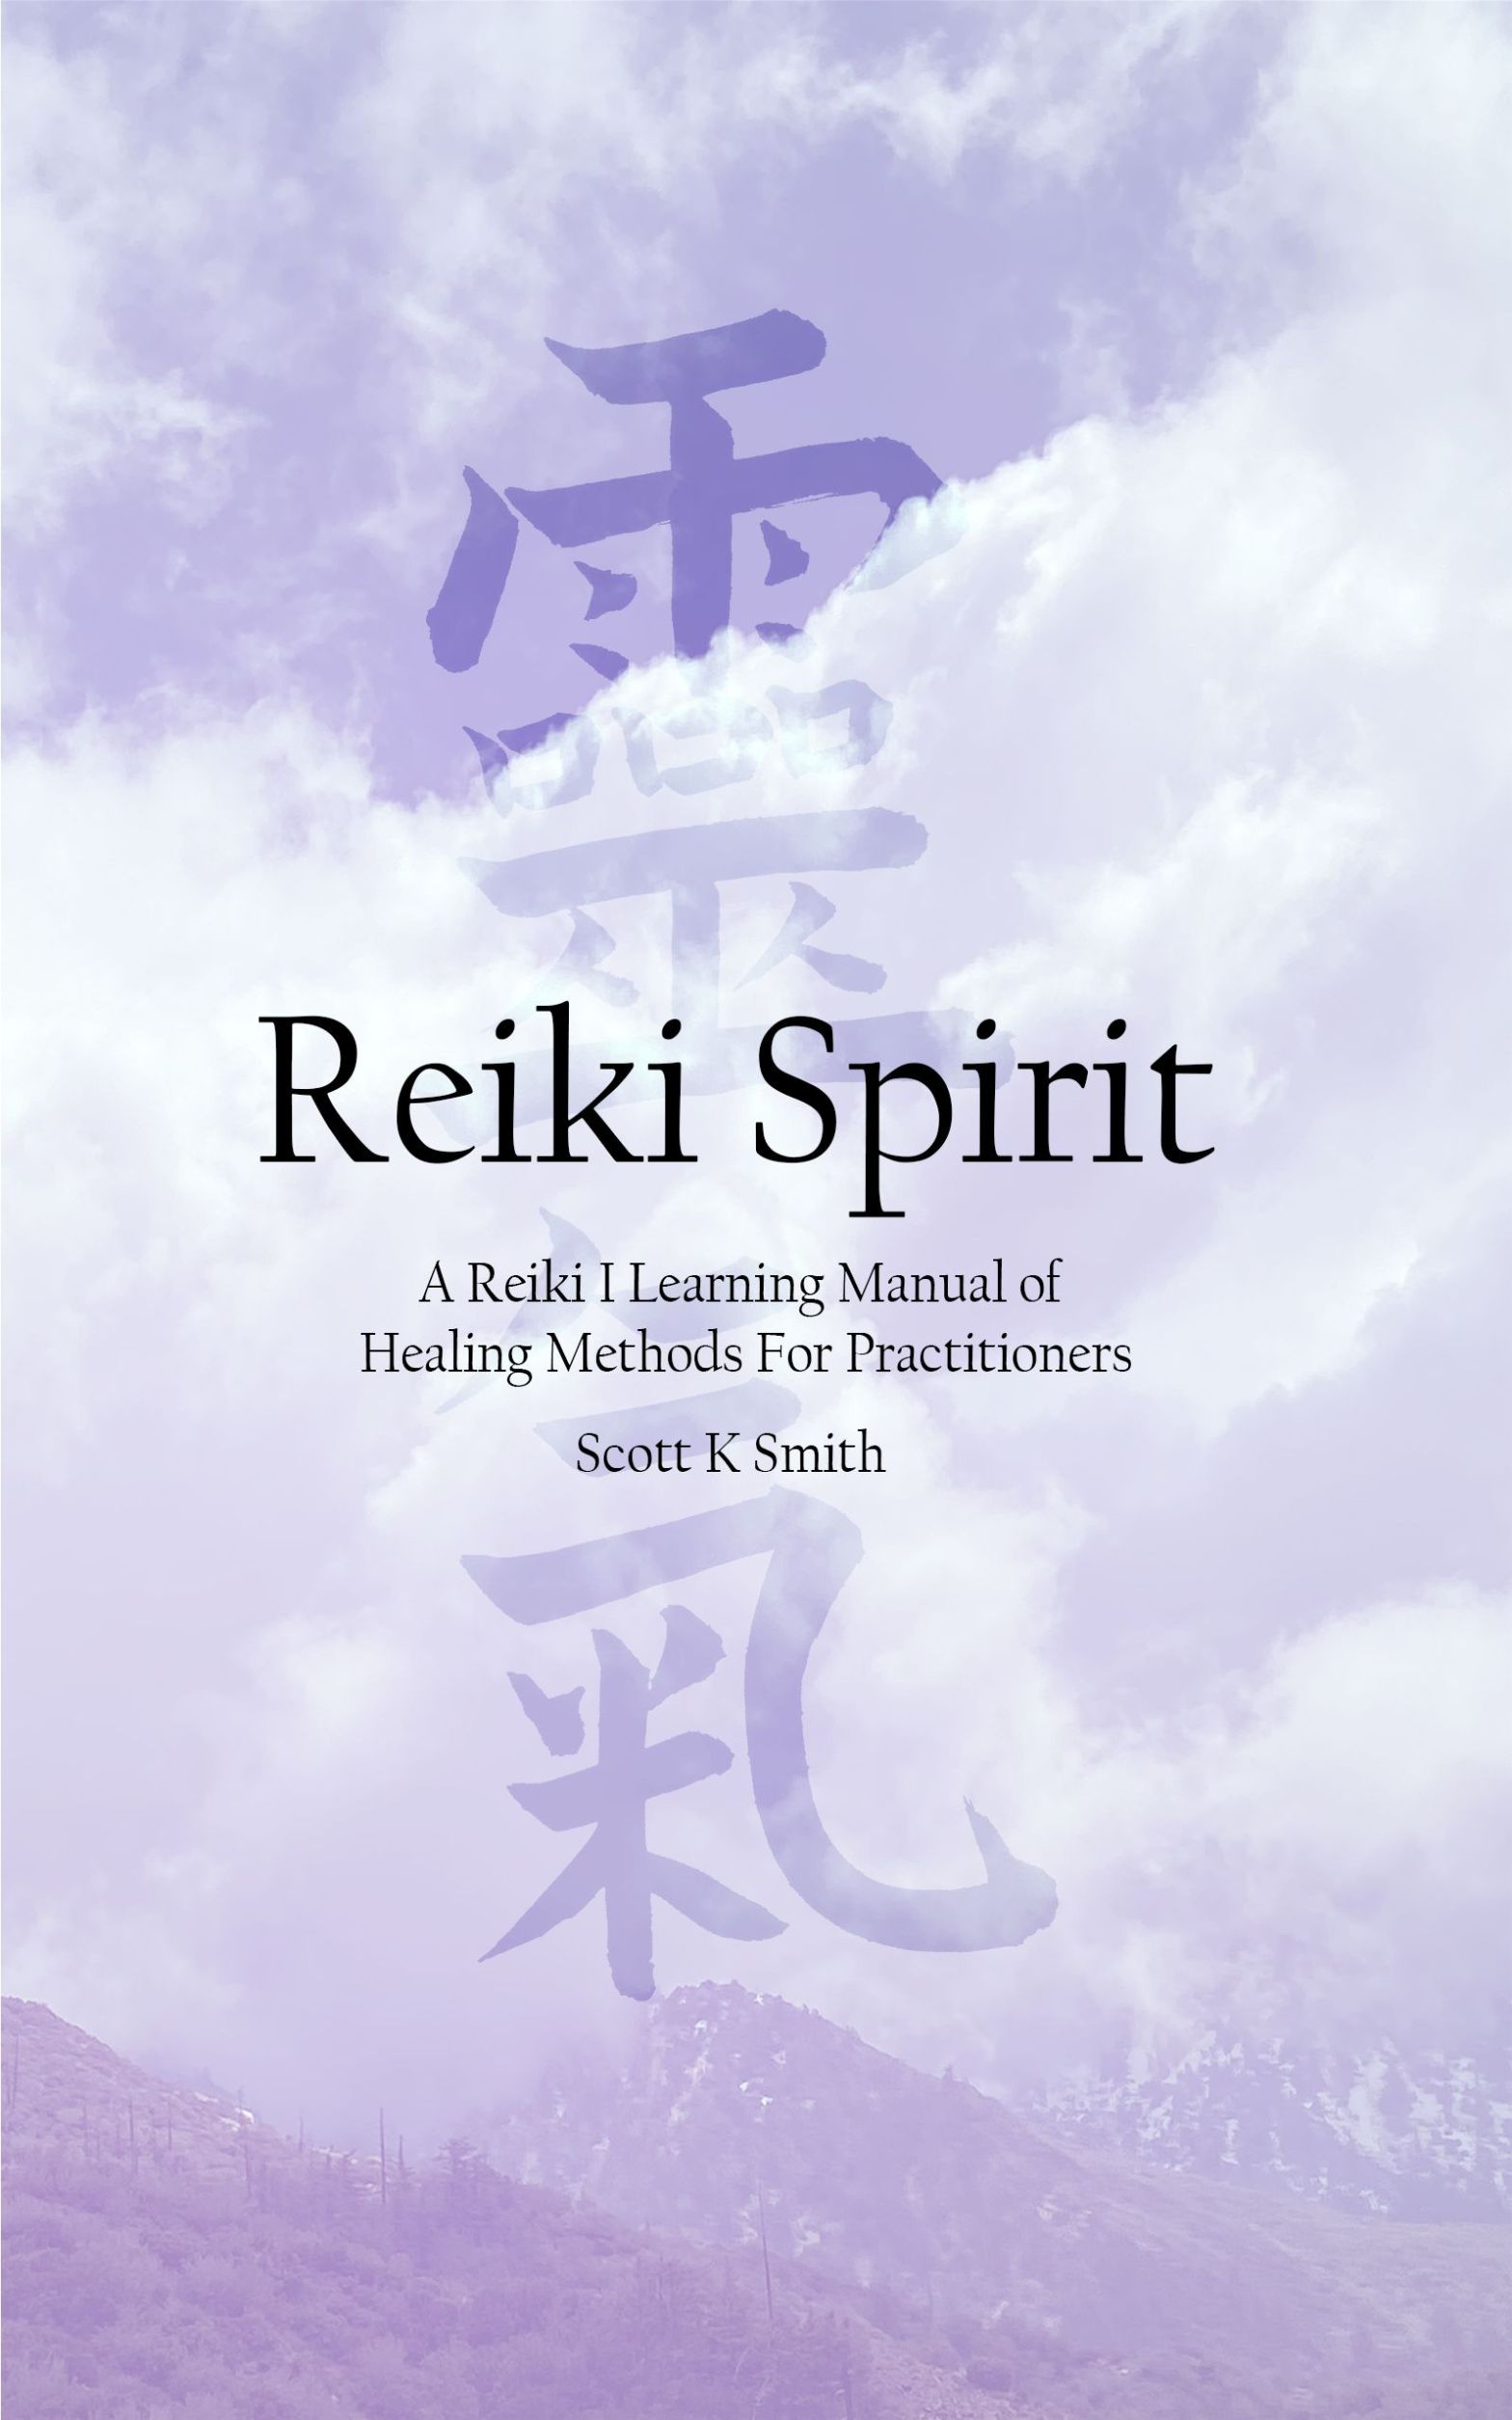 Now Available: Reiki Spirit